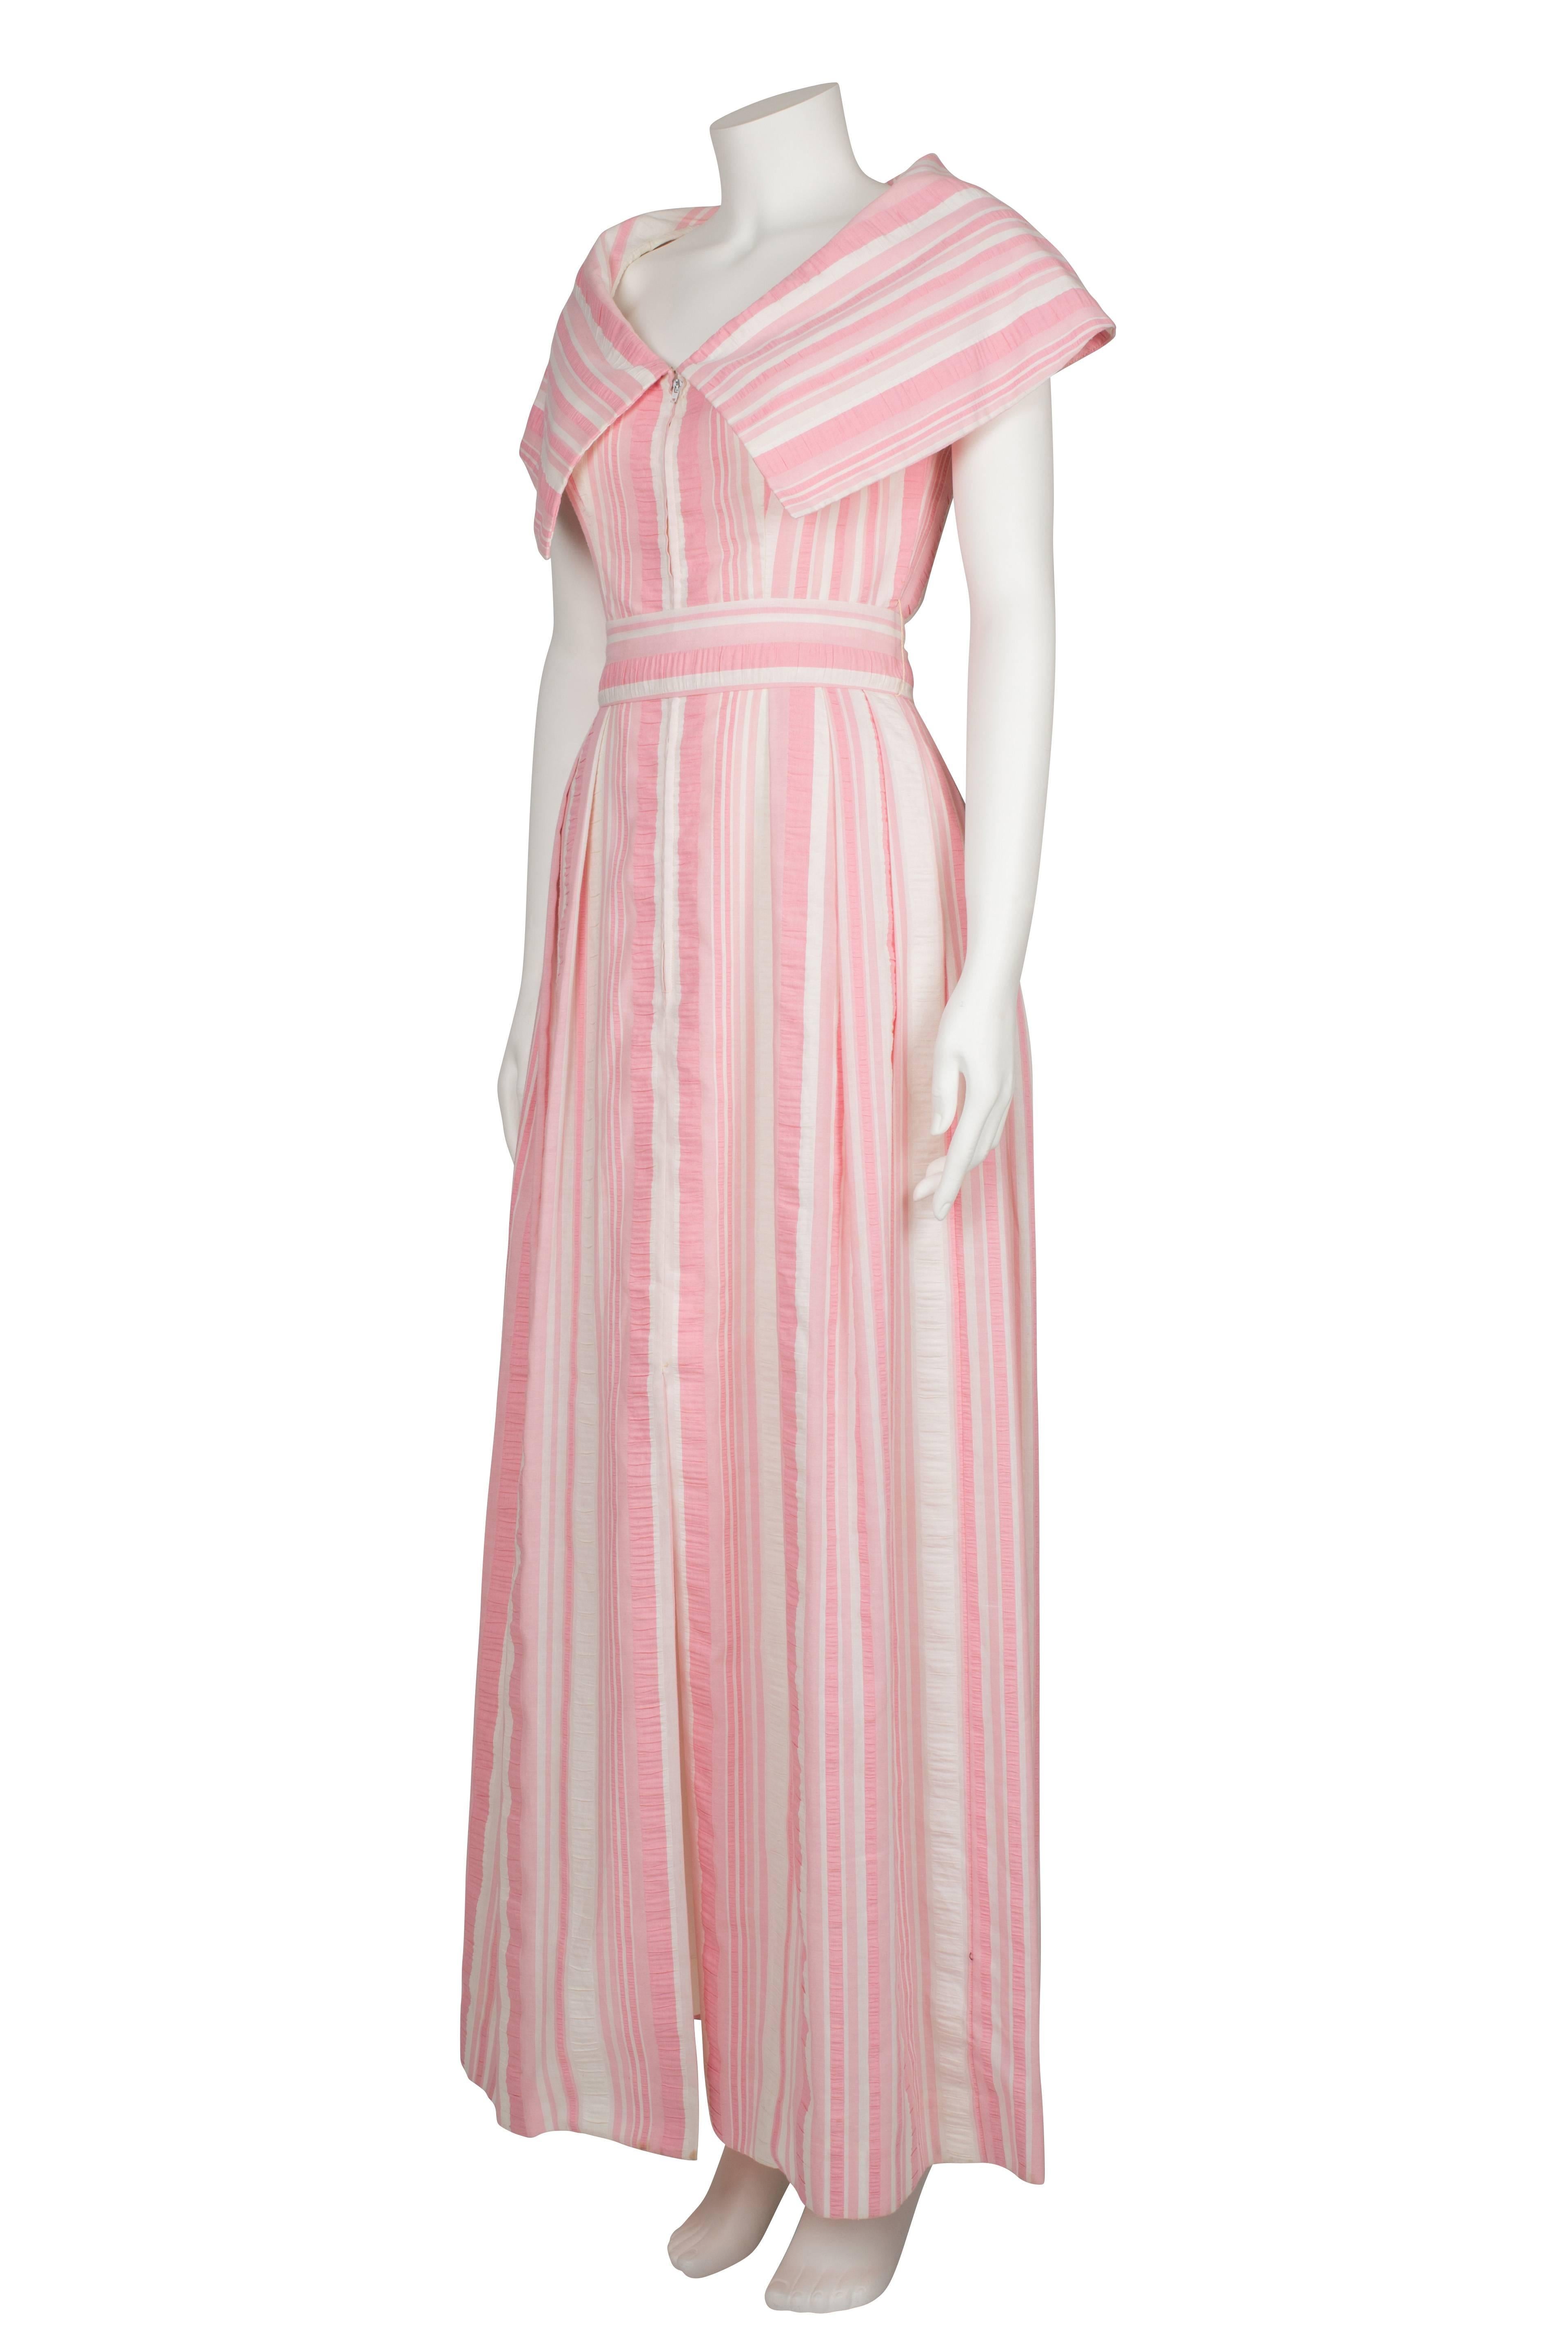 1970's Estevez Seersucker Pink & Ivory Candy Stripes Dress For Sale 1